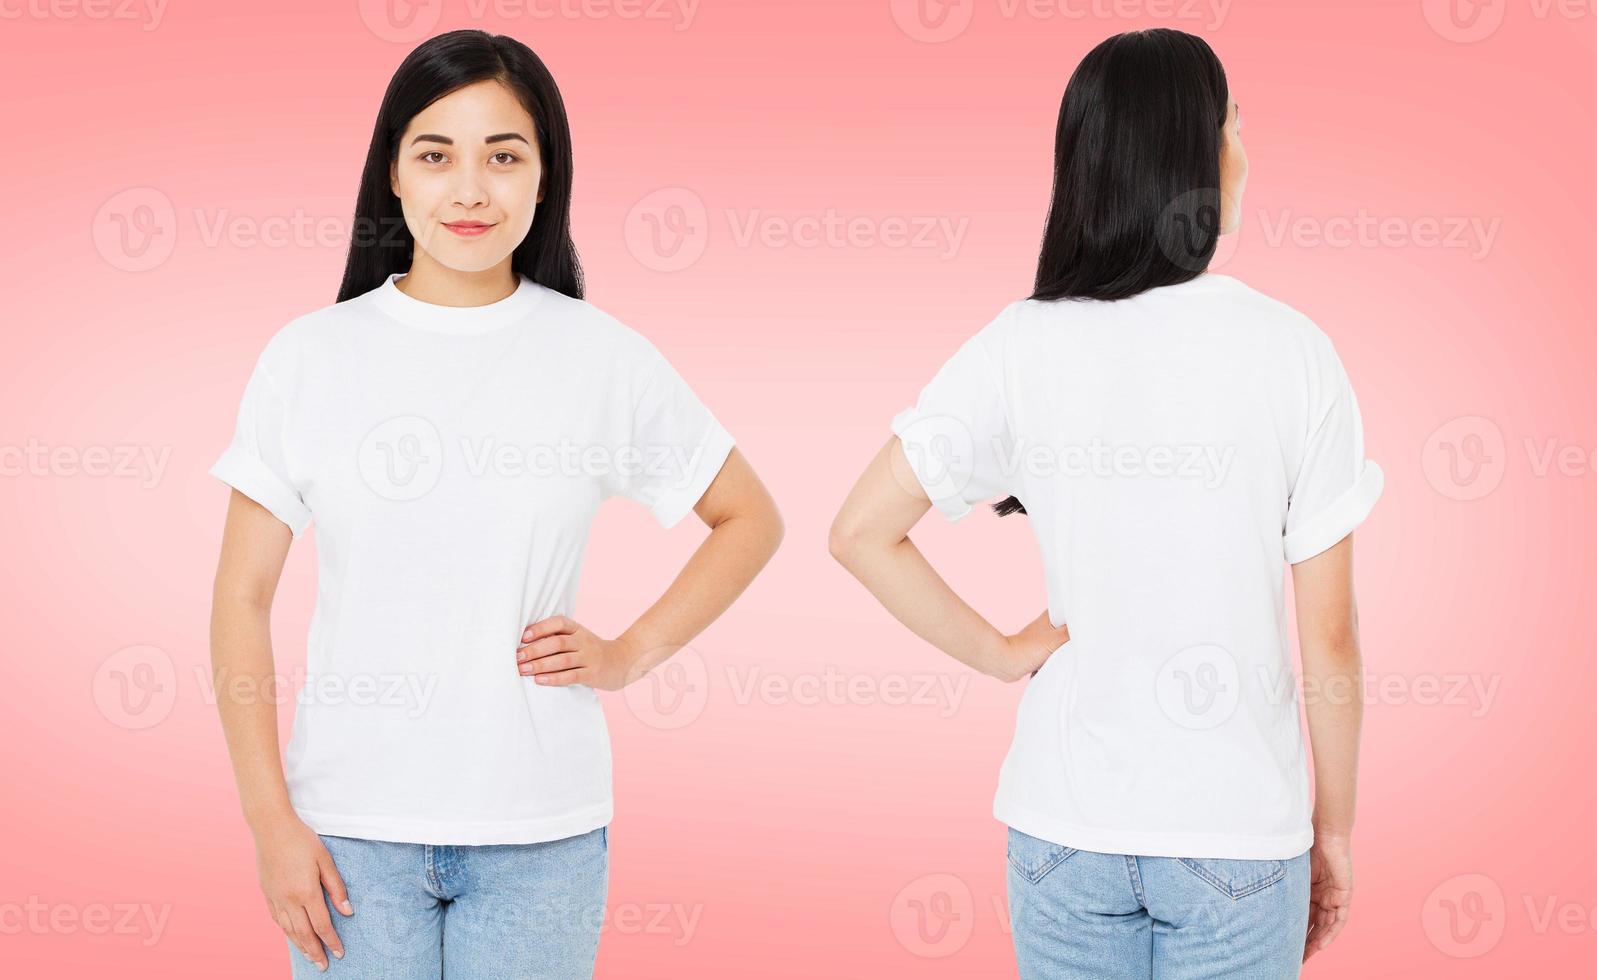 conjunto, colagem, frente e verso, vistas, linda, coreana, mulher asiática, em, t-shirt, isolada foto